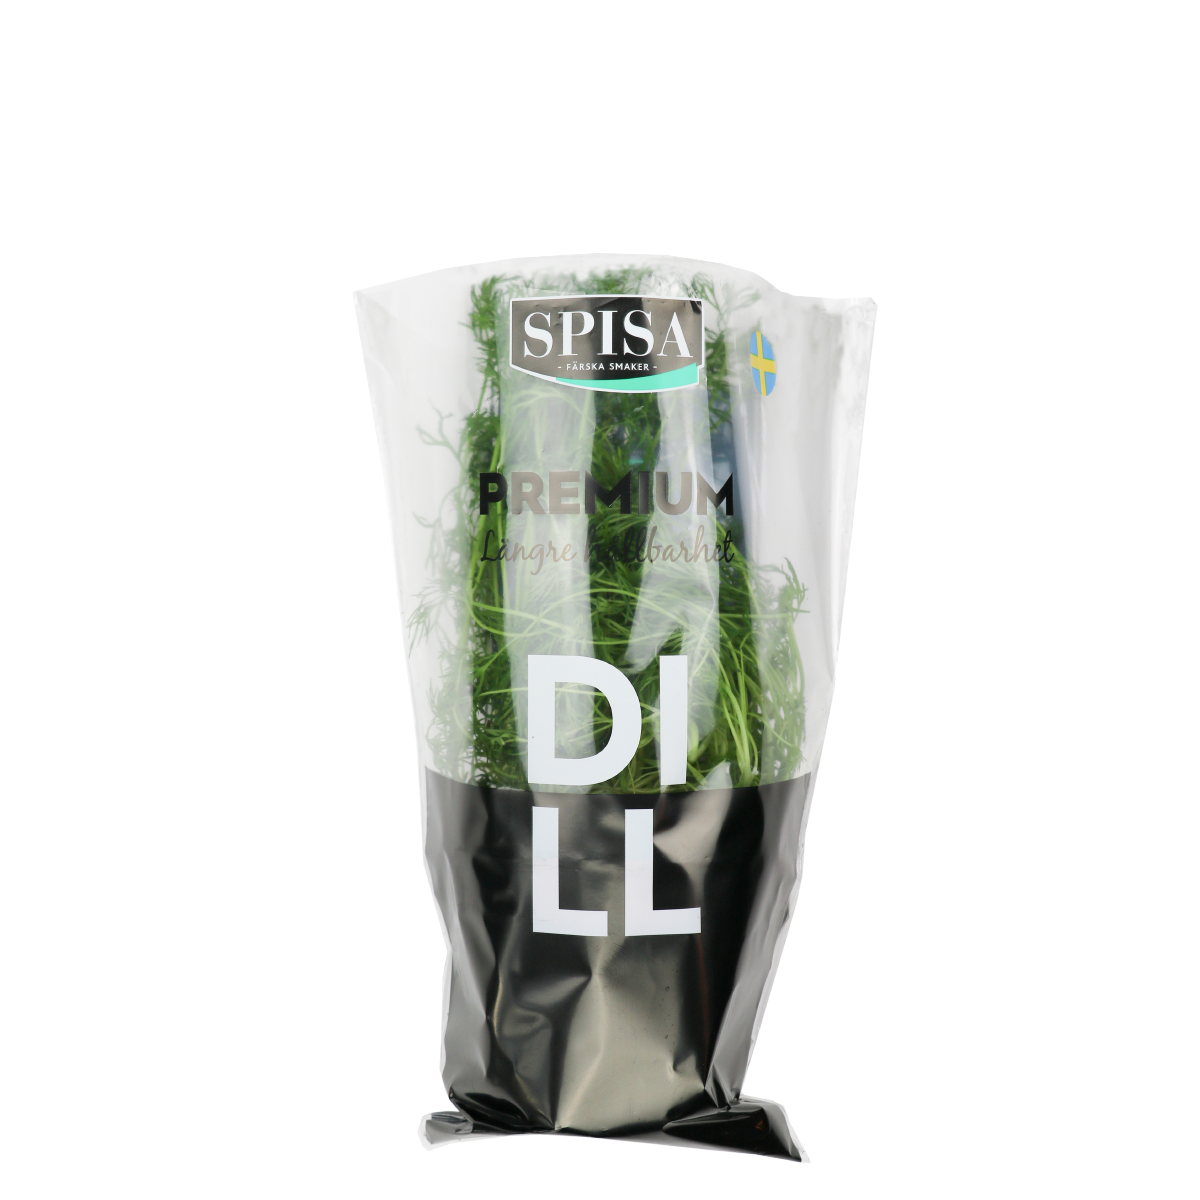 Spisa Flavours Spisa Premium Dill'